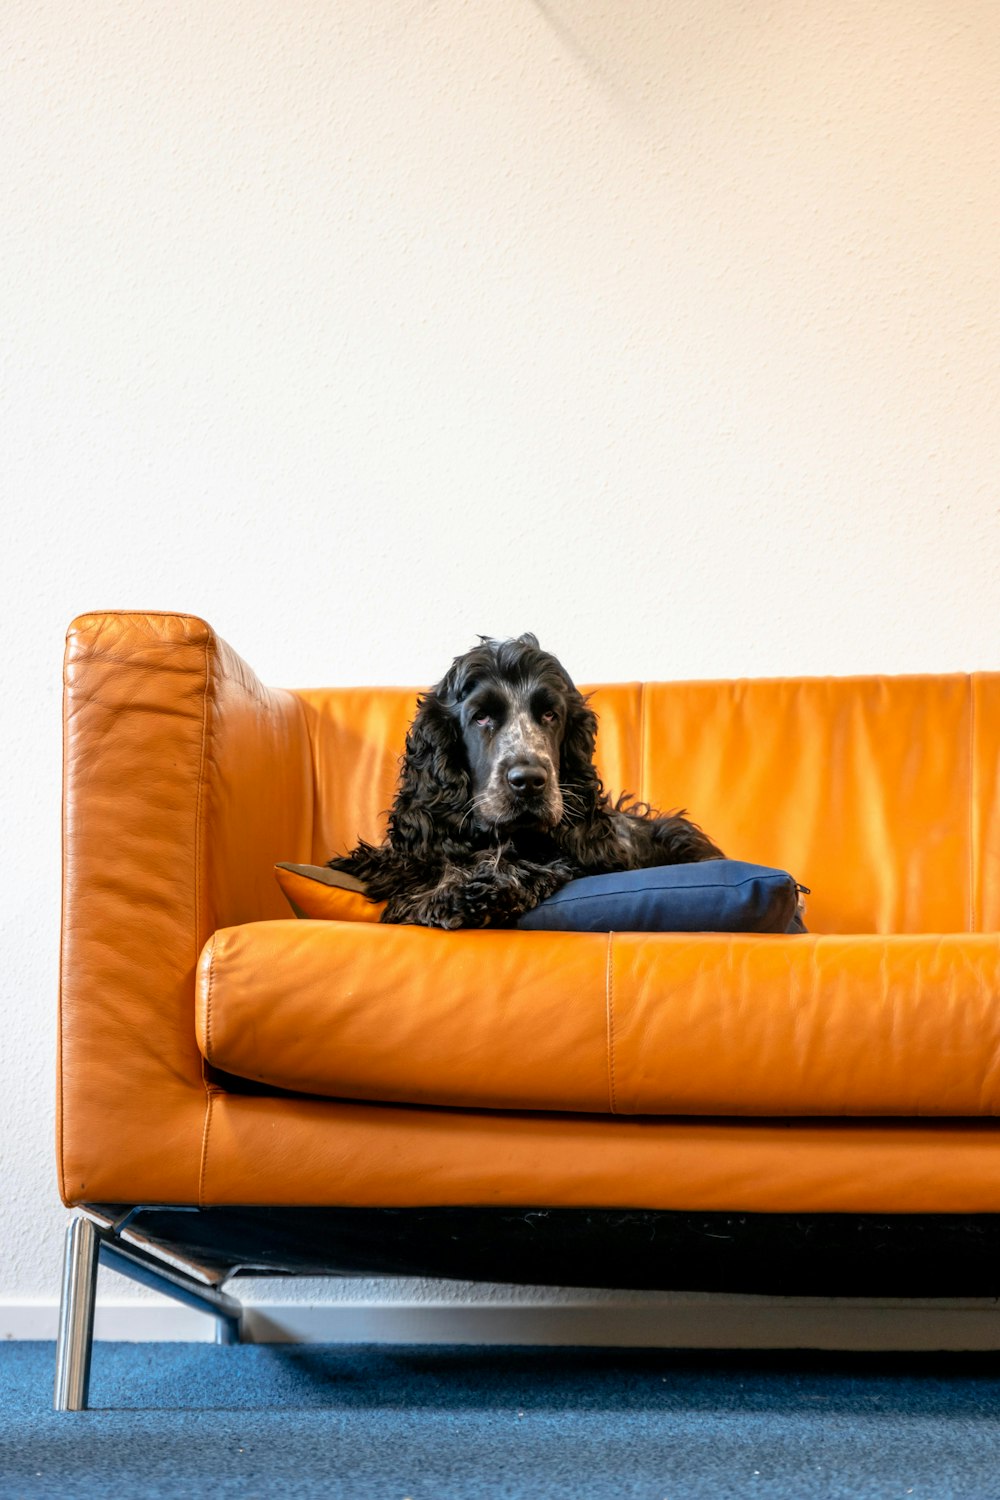 black and white long coated dog lying on orange couch